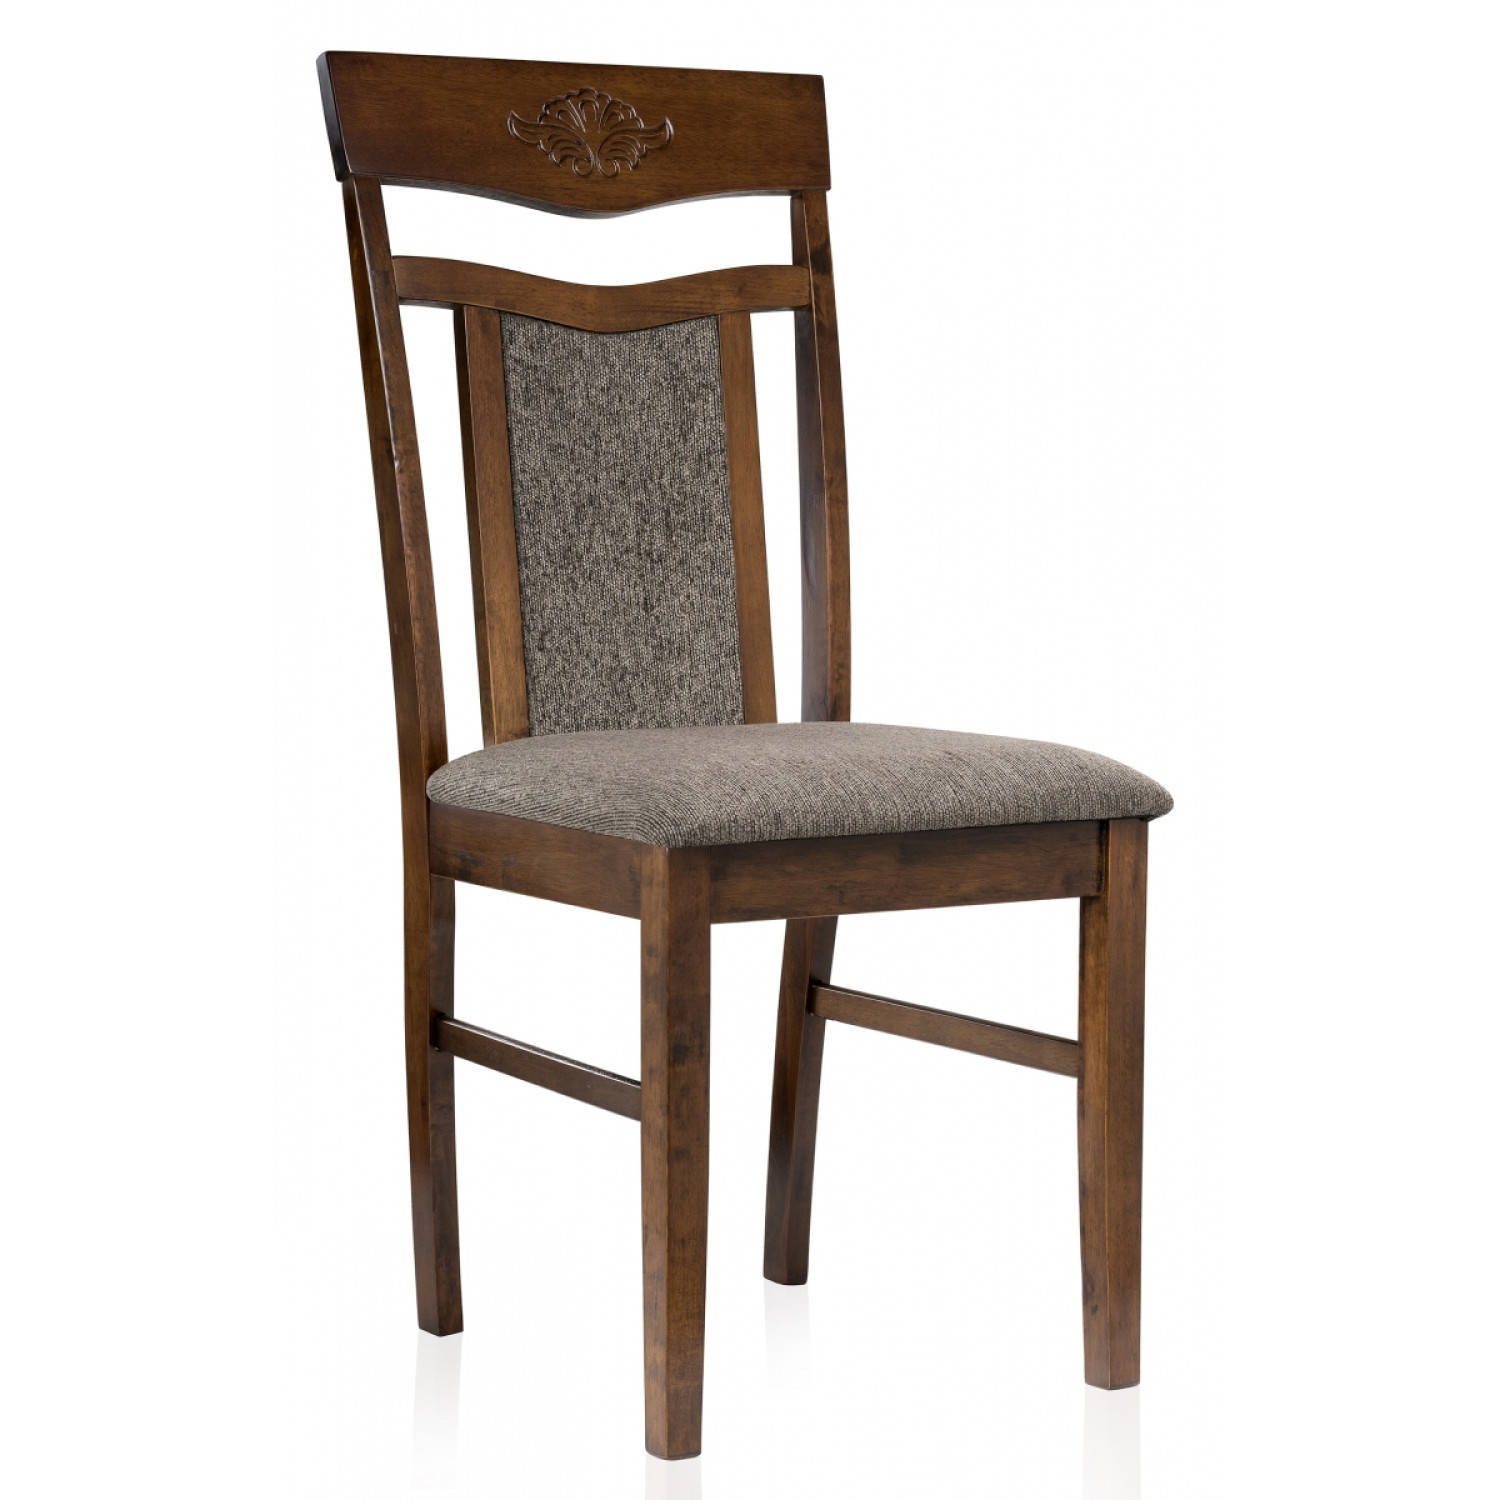 Деревянные стулья Sketch dirty oak / dark brown фото 1 — New Style of Furniture